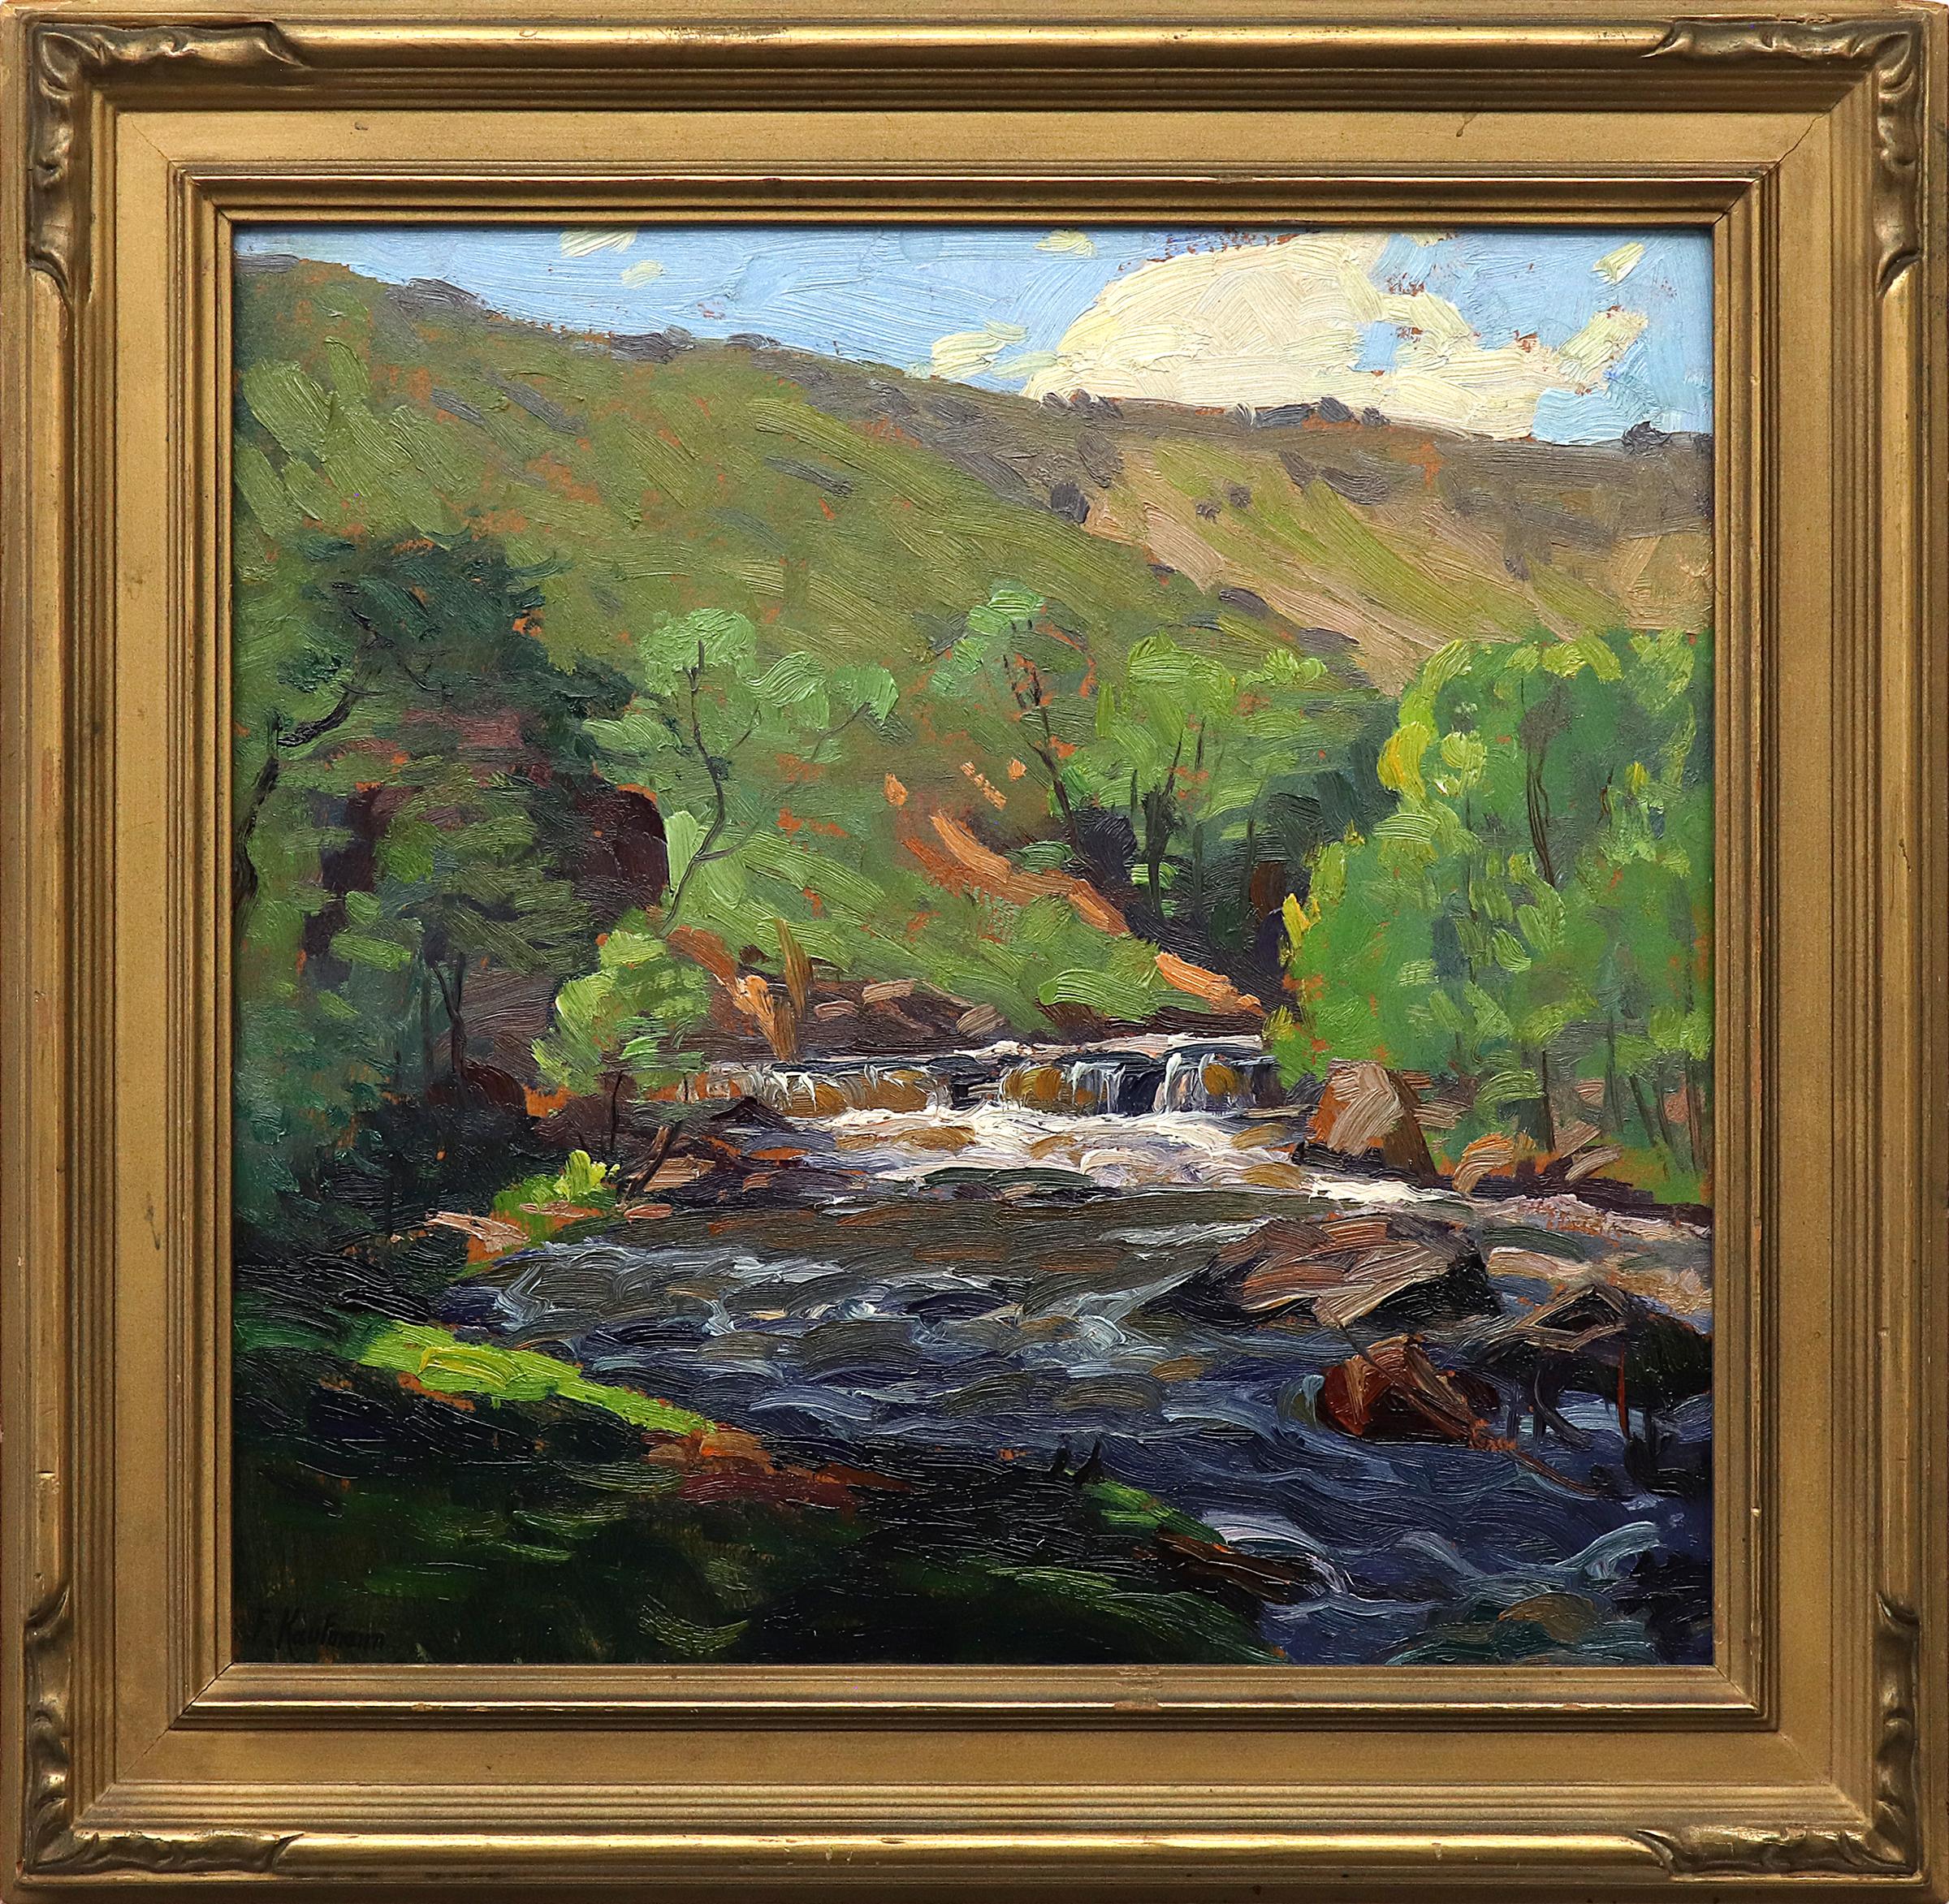 Peinture impressionniste d'un paysage de montagne avec rivière, années 1920-1930, Greene & Greene Brown - Painting de Ferdinand Kaufmann 